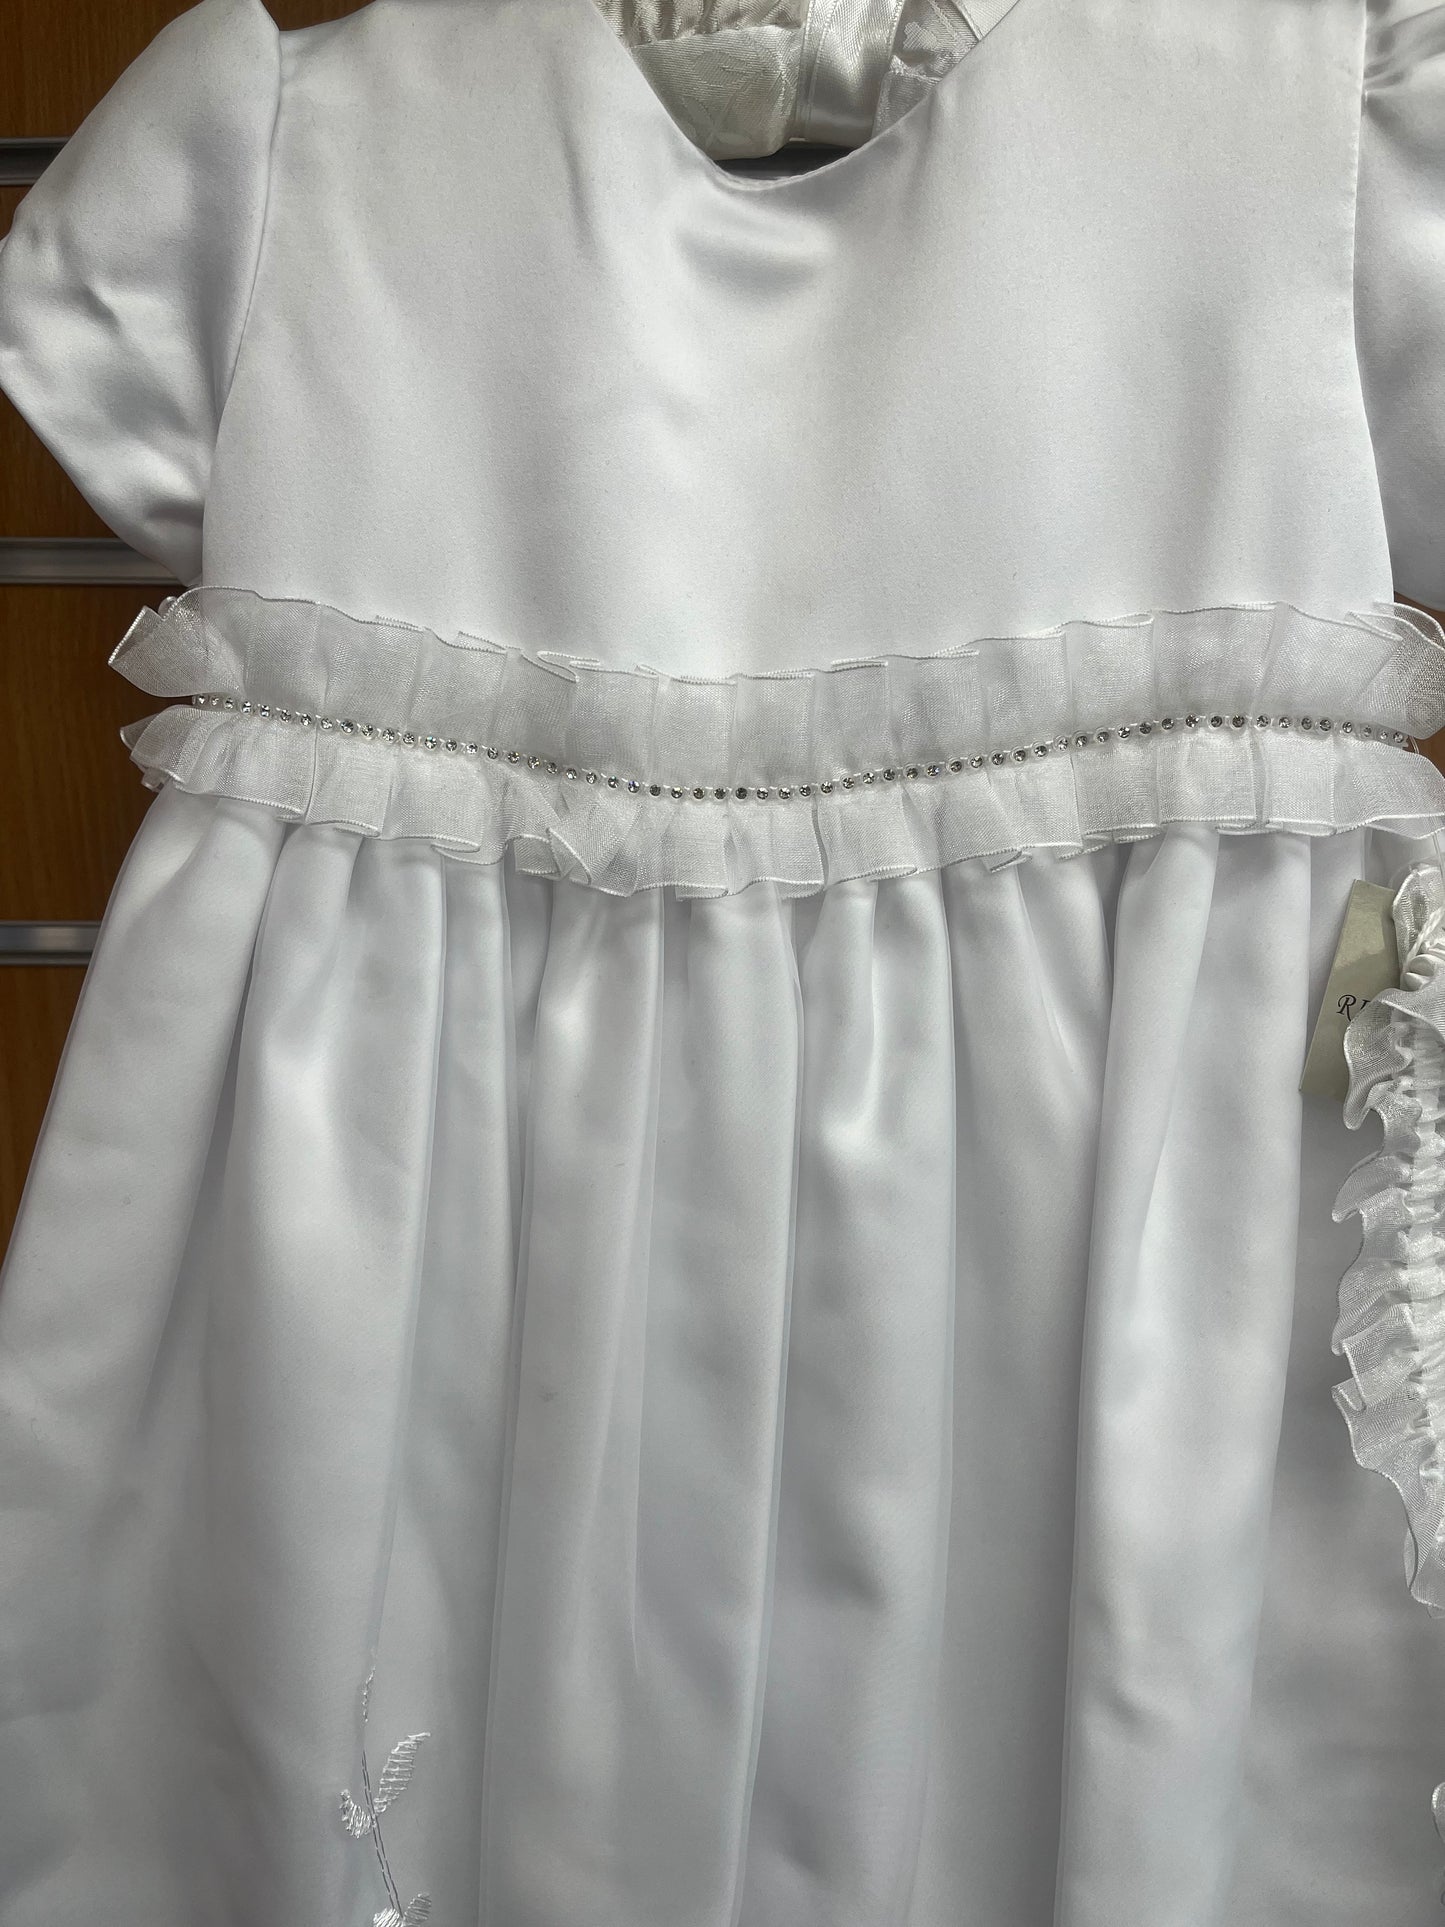 White Full length Christening Gown 6-12 Months